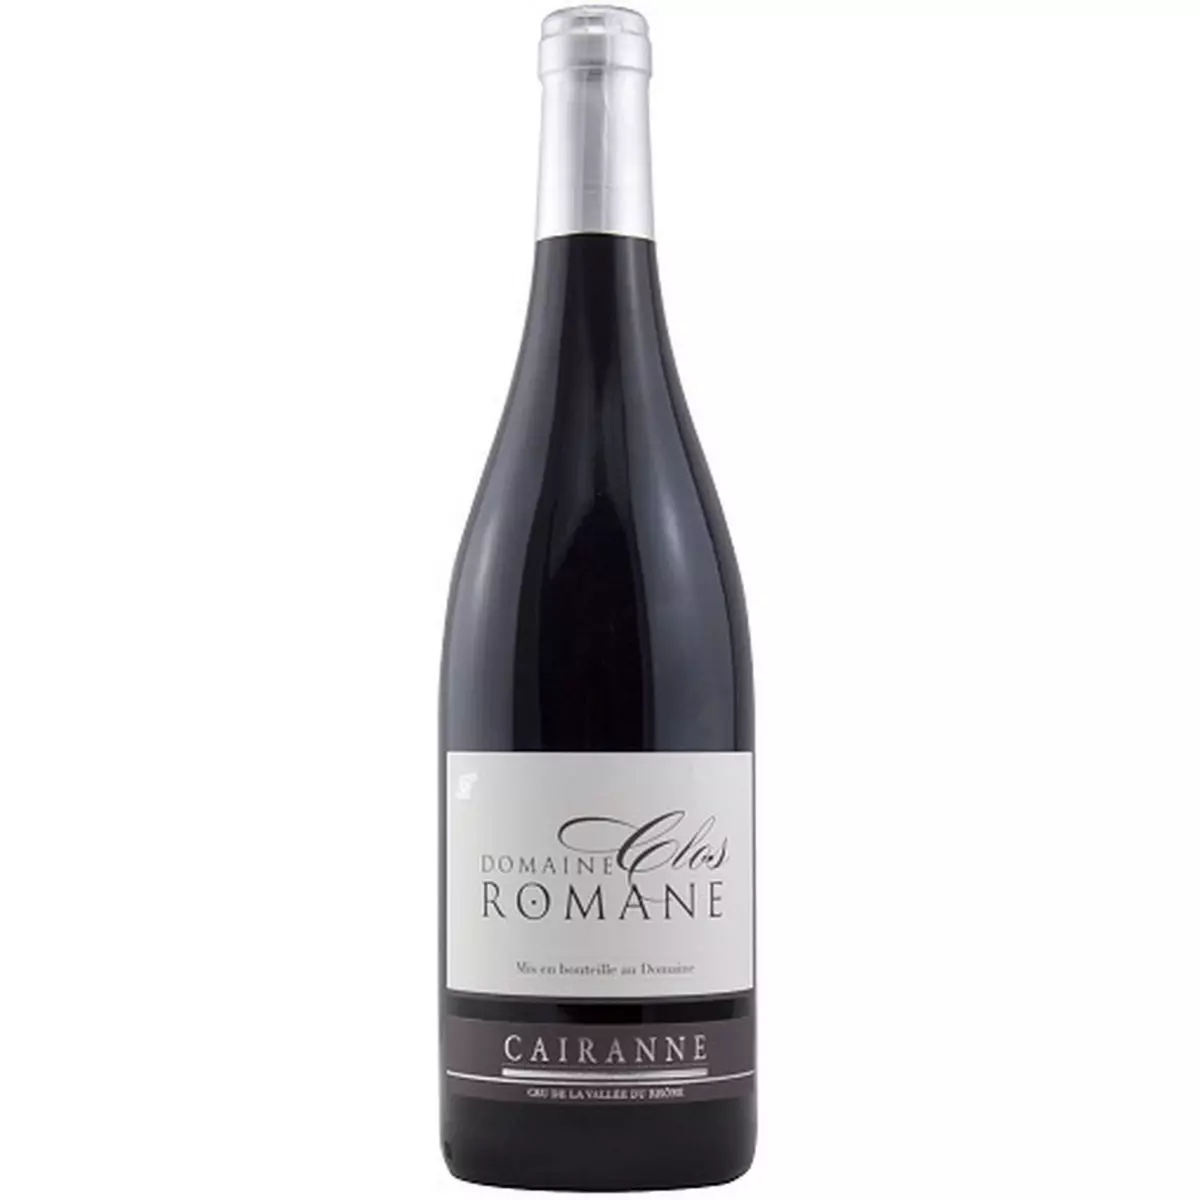 Vin rouge AOP Cairanne Domaine Clos Romane 75cl